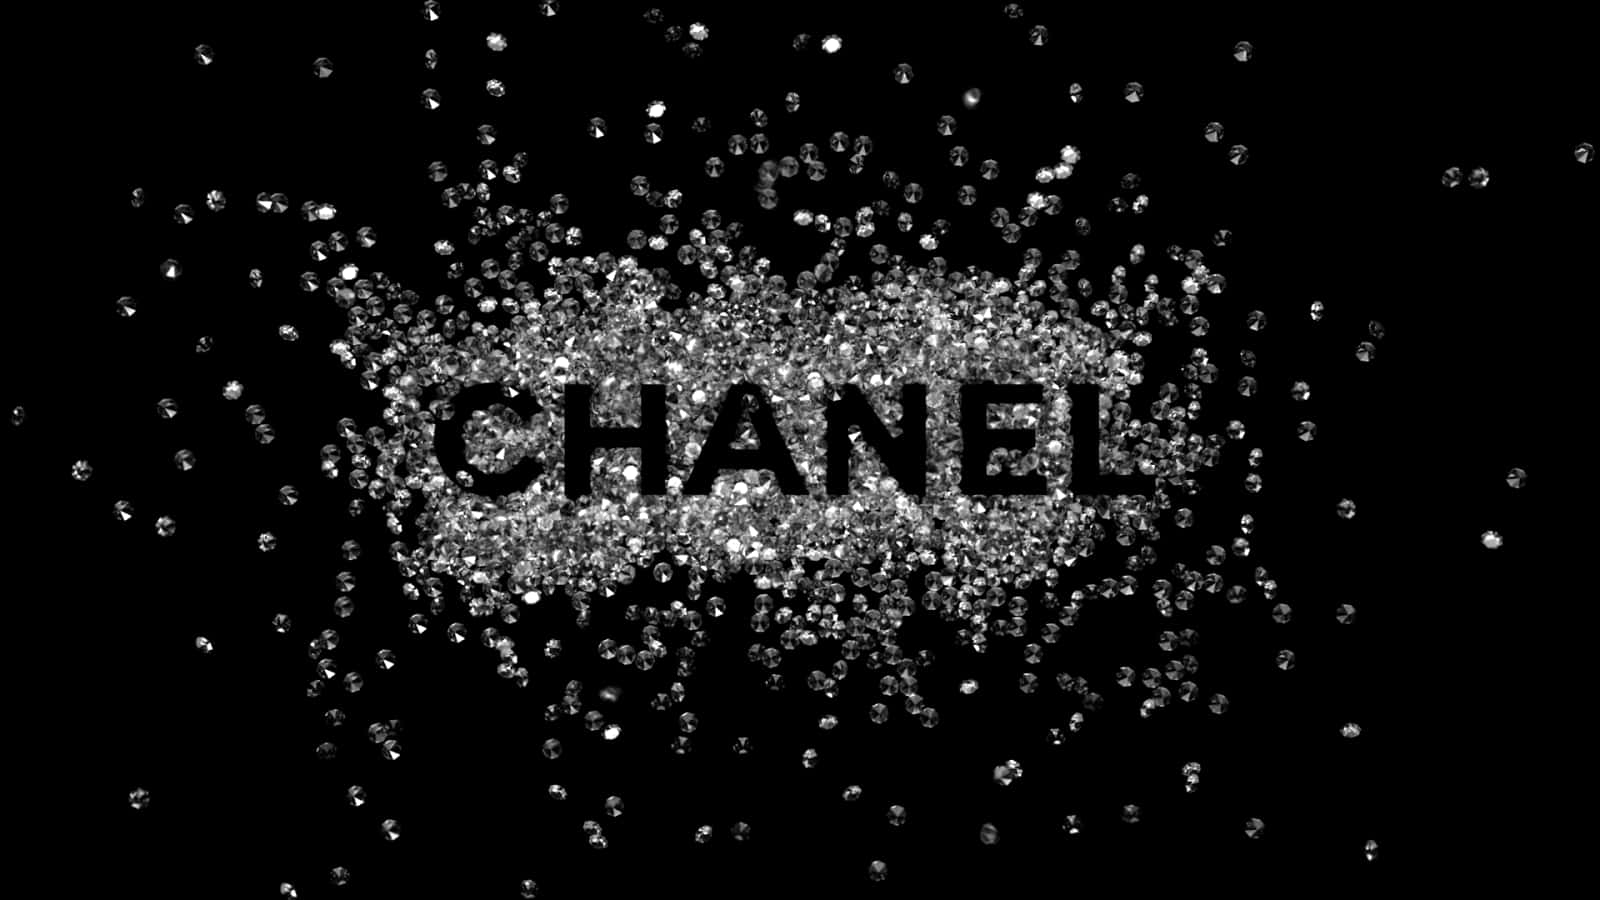 500 Chanel Ảnh Hình Nền Background Đẹp Nhất Miễn Phí Dành Cho Bạn Tải  Về Chanel Tại Zicxa Photos